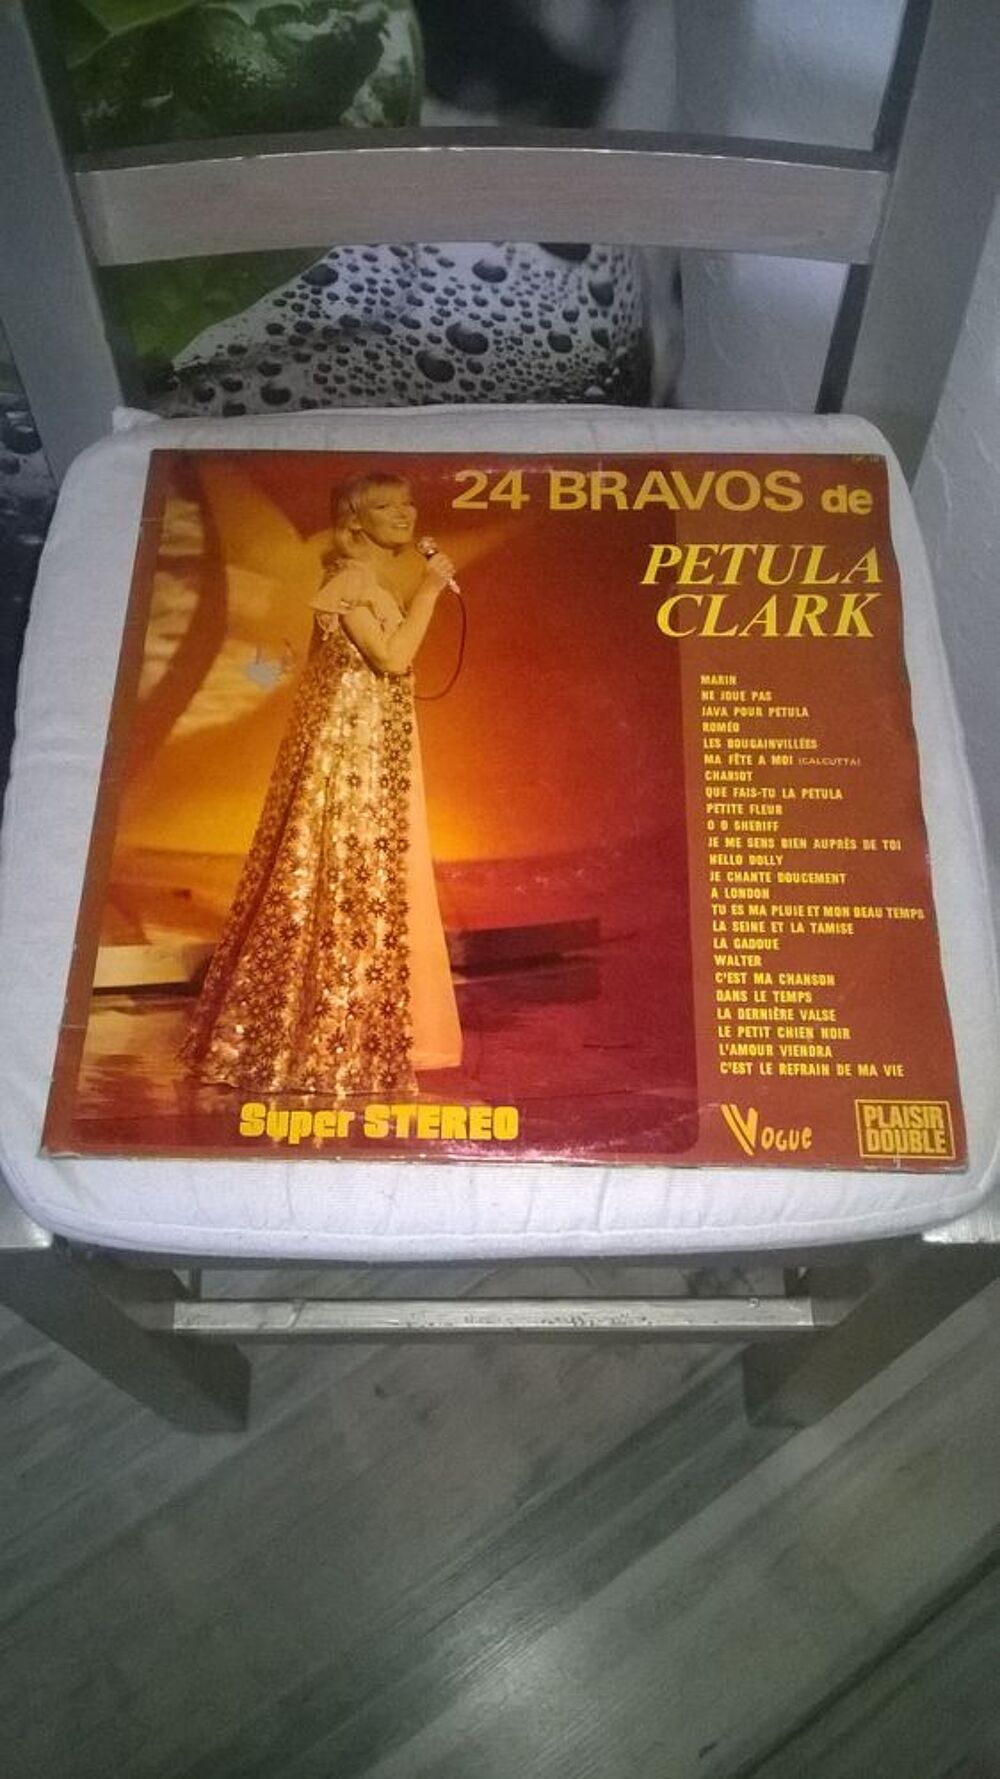 Vinyle Petula Clark
24 Bravos
1974
Bon etat
Pochette use CD et vinyles